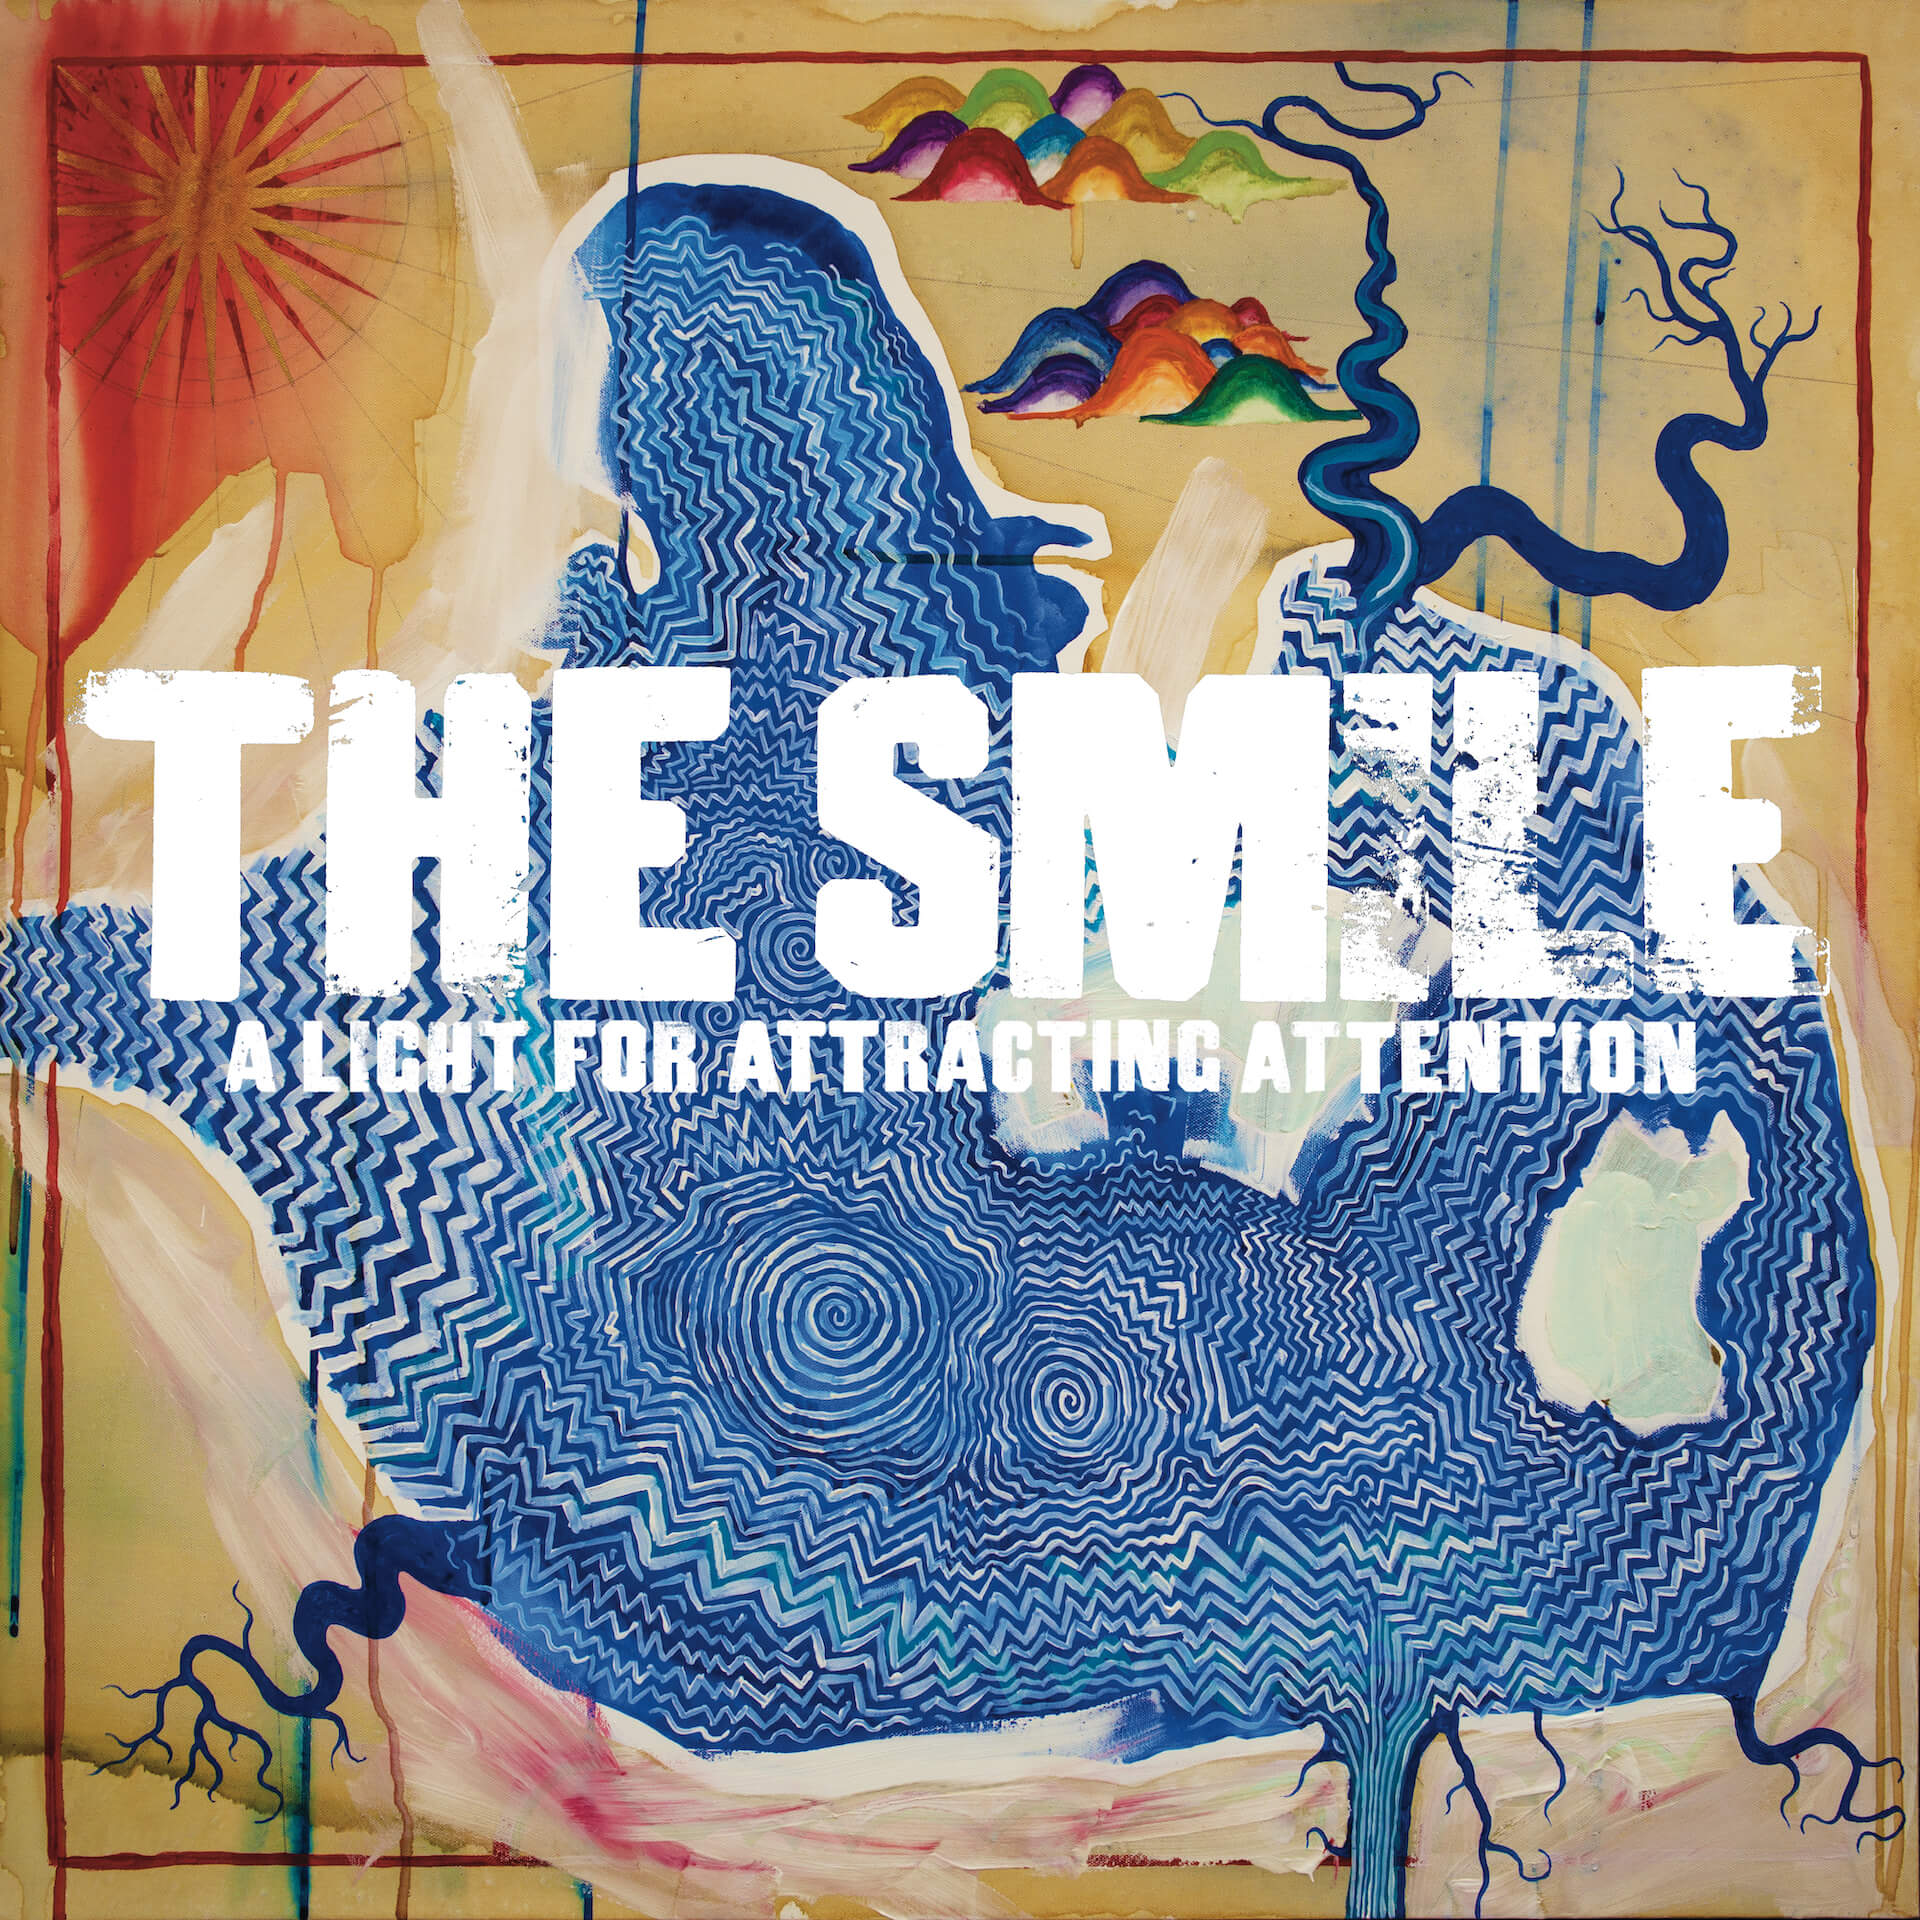 トム・ヨーク×ジョニー・グリーンウッド×トム・スキナーによるThe Smileが1stアルバムをリリース｜Tシャツ付限定盤CDの発売決定 music220513_the-smile-album-01